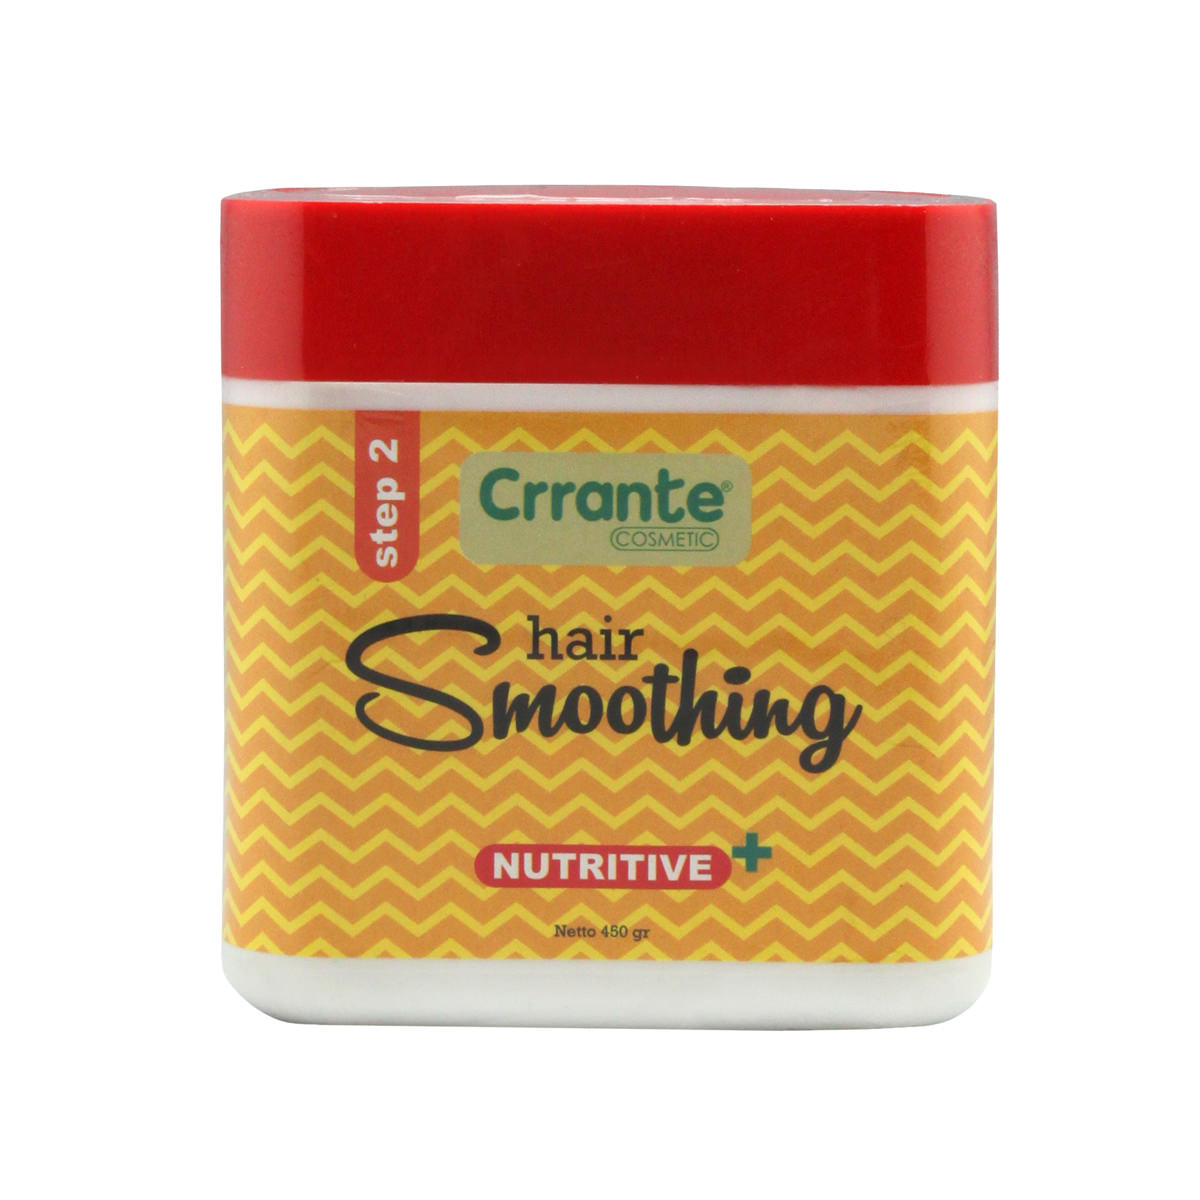 Crrante-Hair-Smoothing-Nutritive+-Step-2-high-sfw(1)